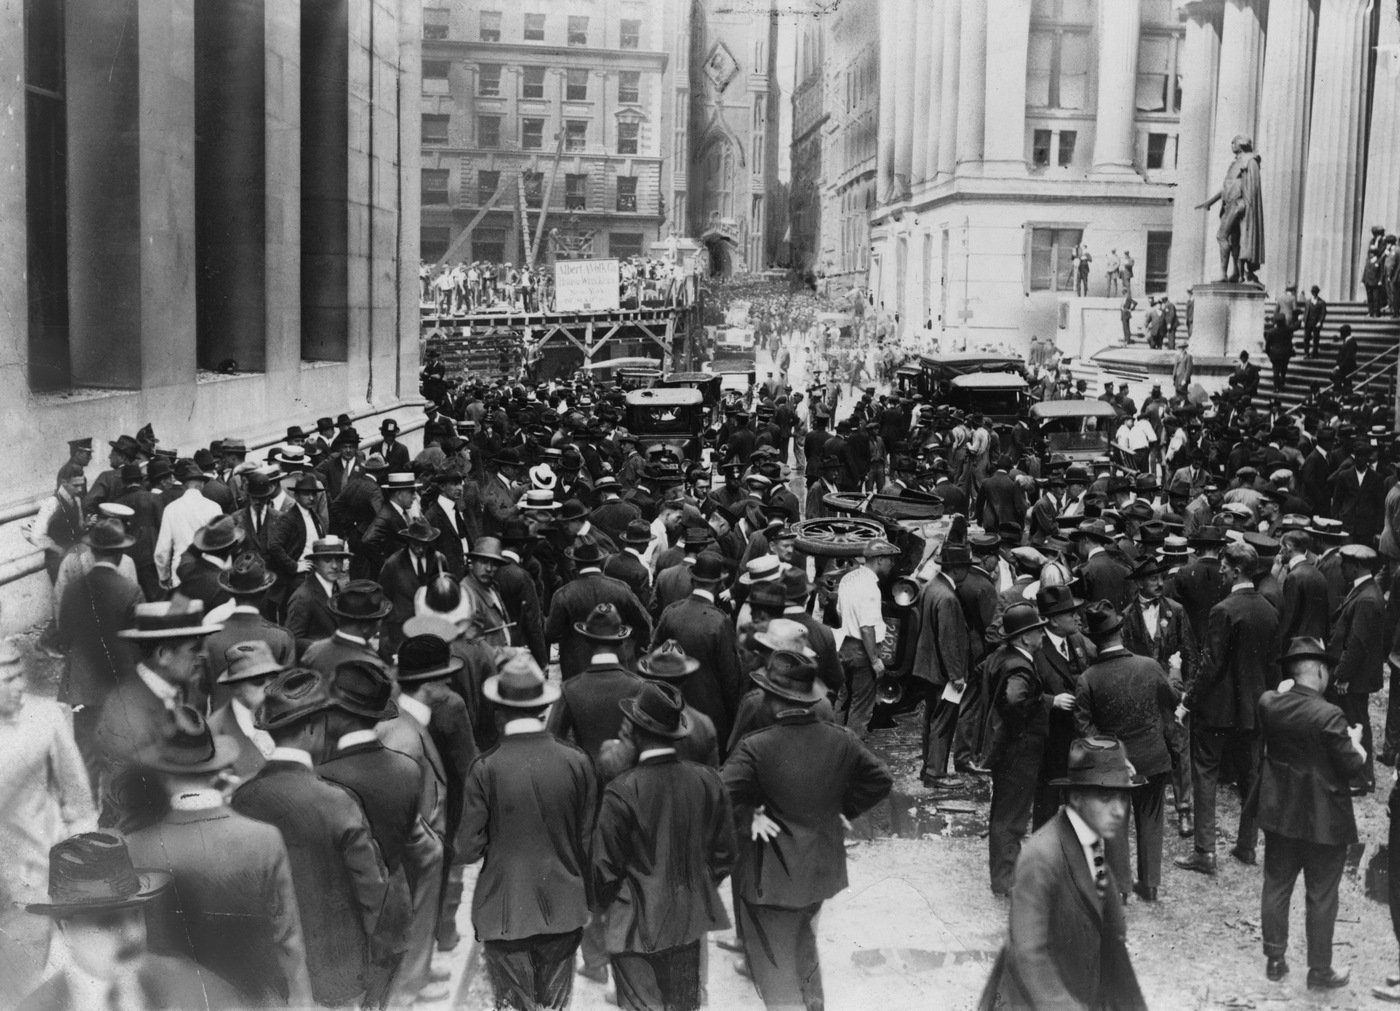 Wall Street Bombing in 1920